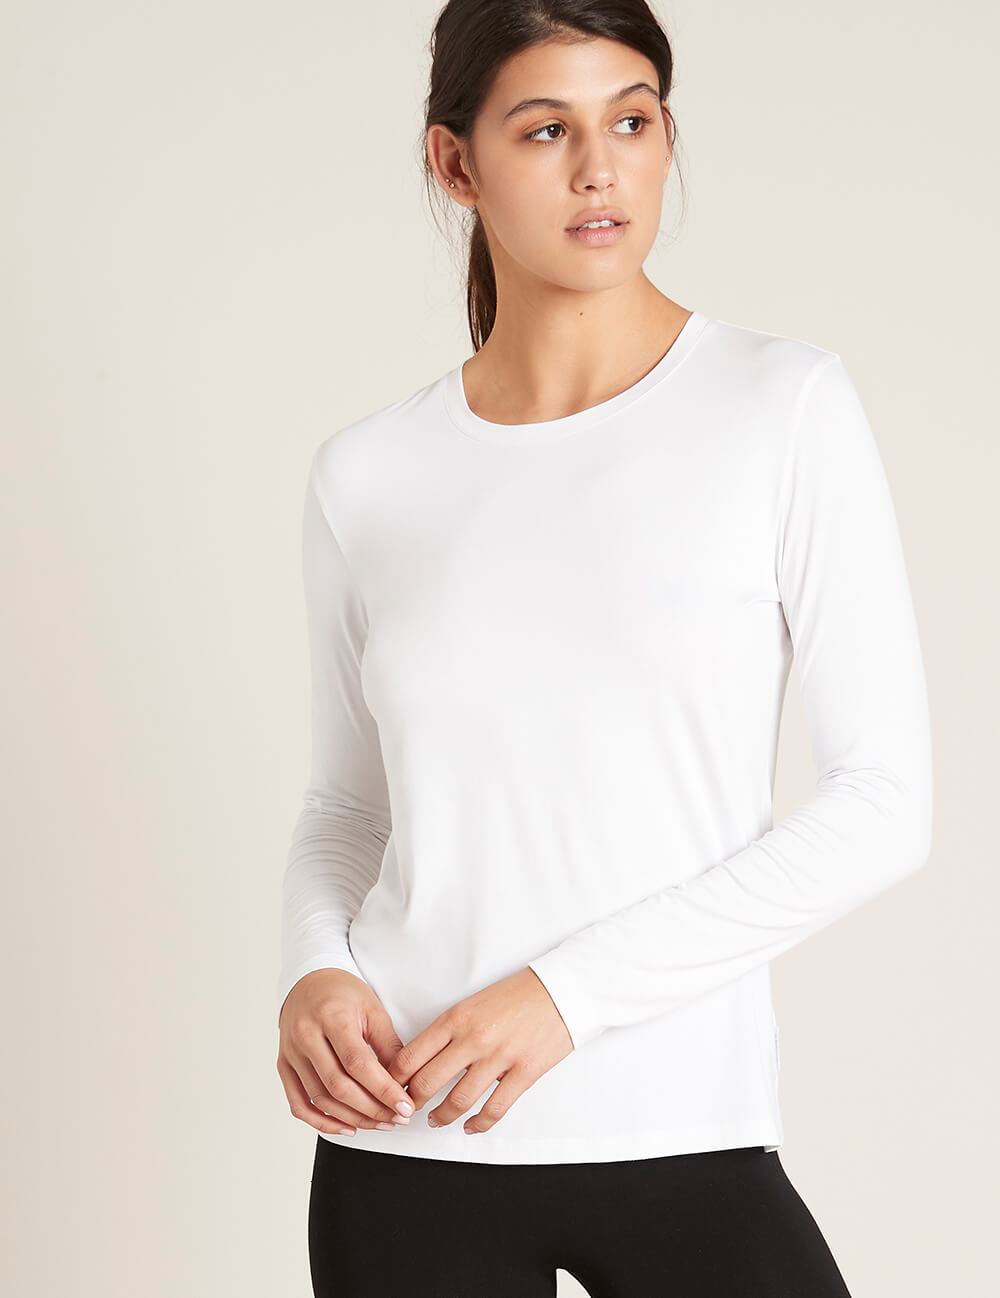 B10801_WHITE_Womens-Long-Sleeve-Round-Neck-T-Shirt_2.jpg